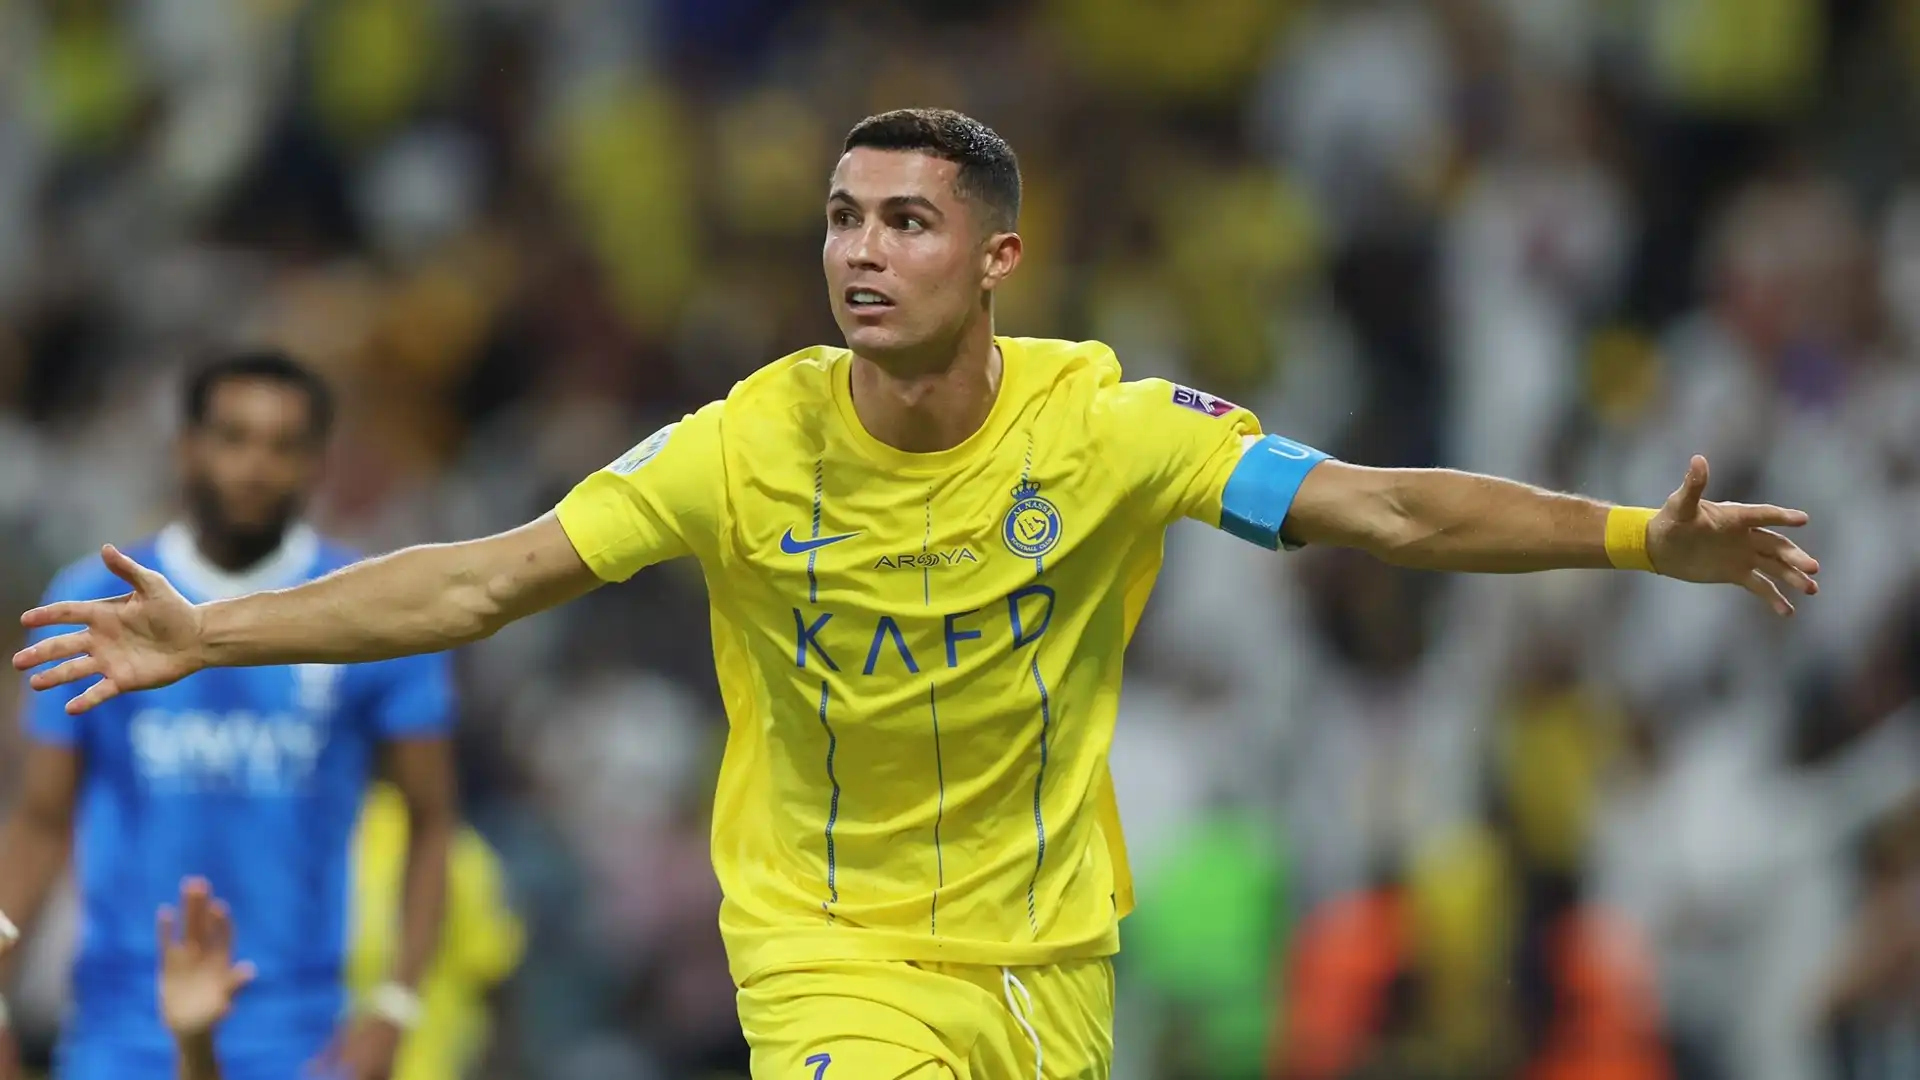 Cristiano Ronaldo (Calcio). Contratto di due anni e mezzo con l'Al-Nassr nel 2023 da 533 milioni di dollari